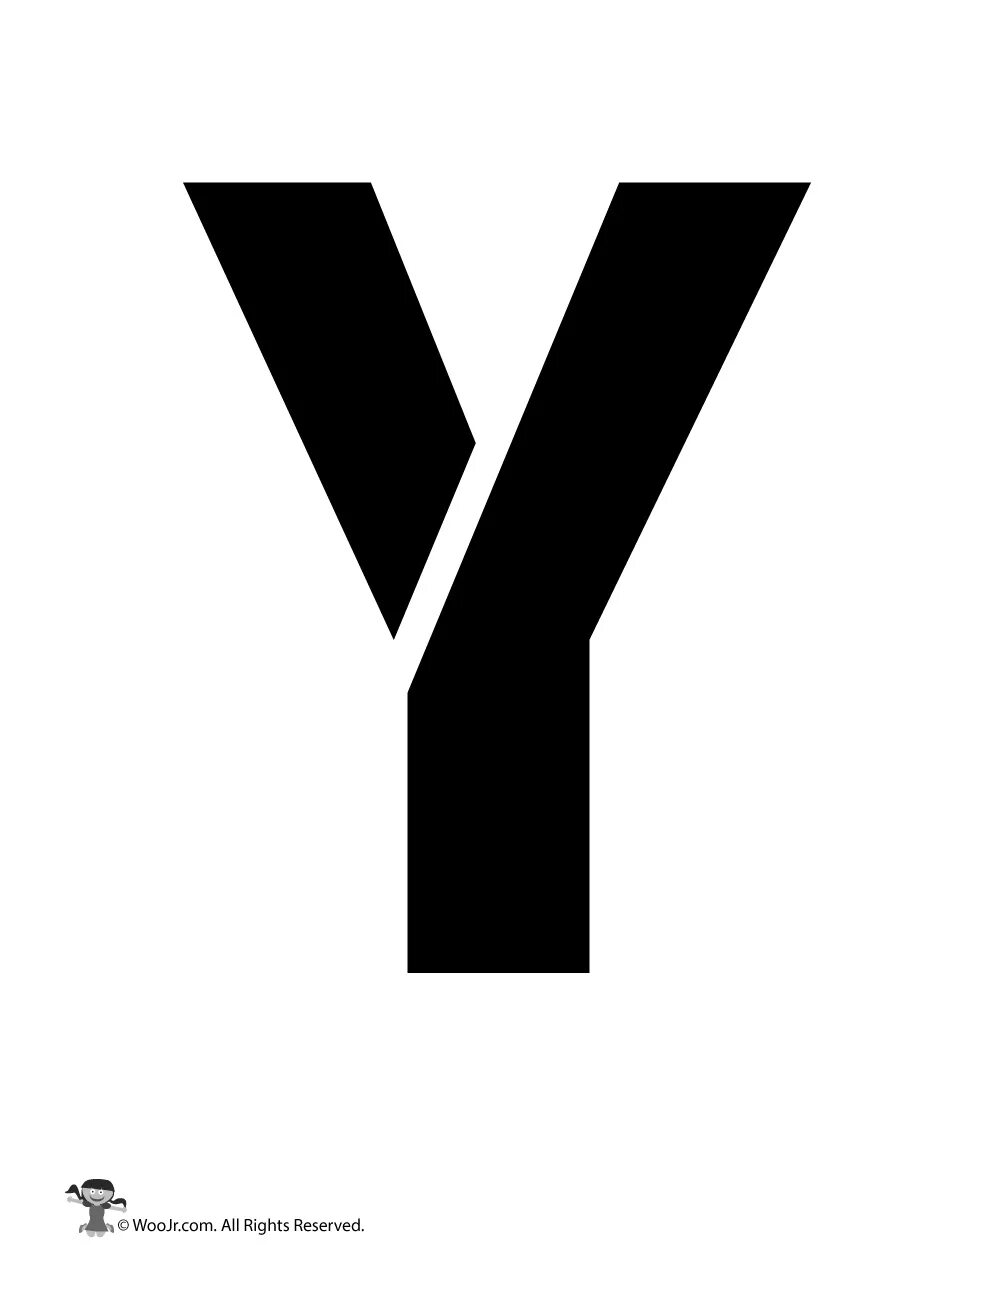 Буква y. Ава с буквой y. Логотип с буквой y. Буква y на белом фоне.